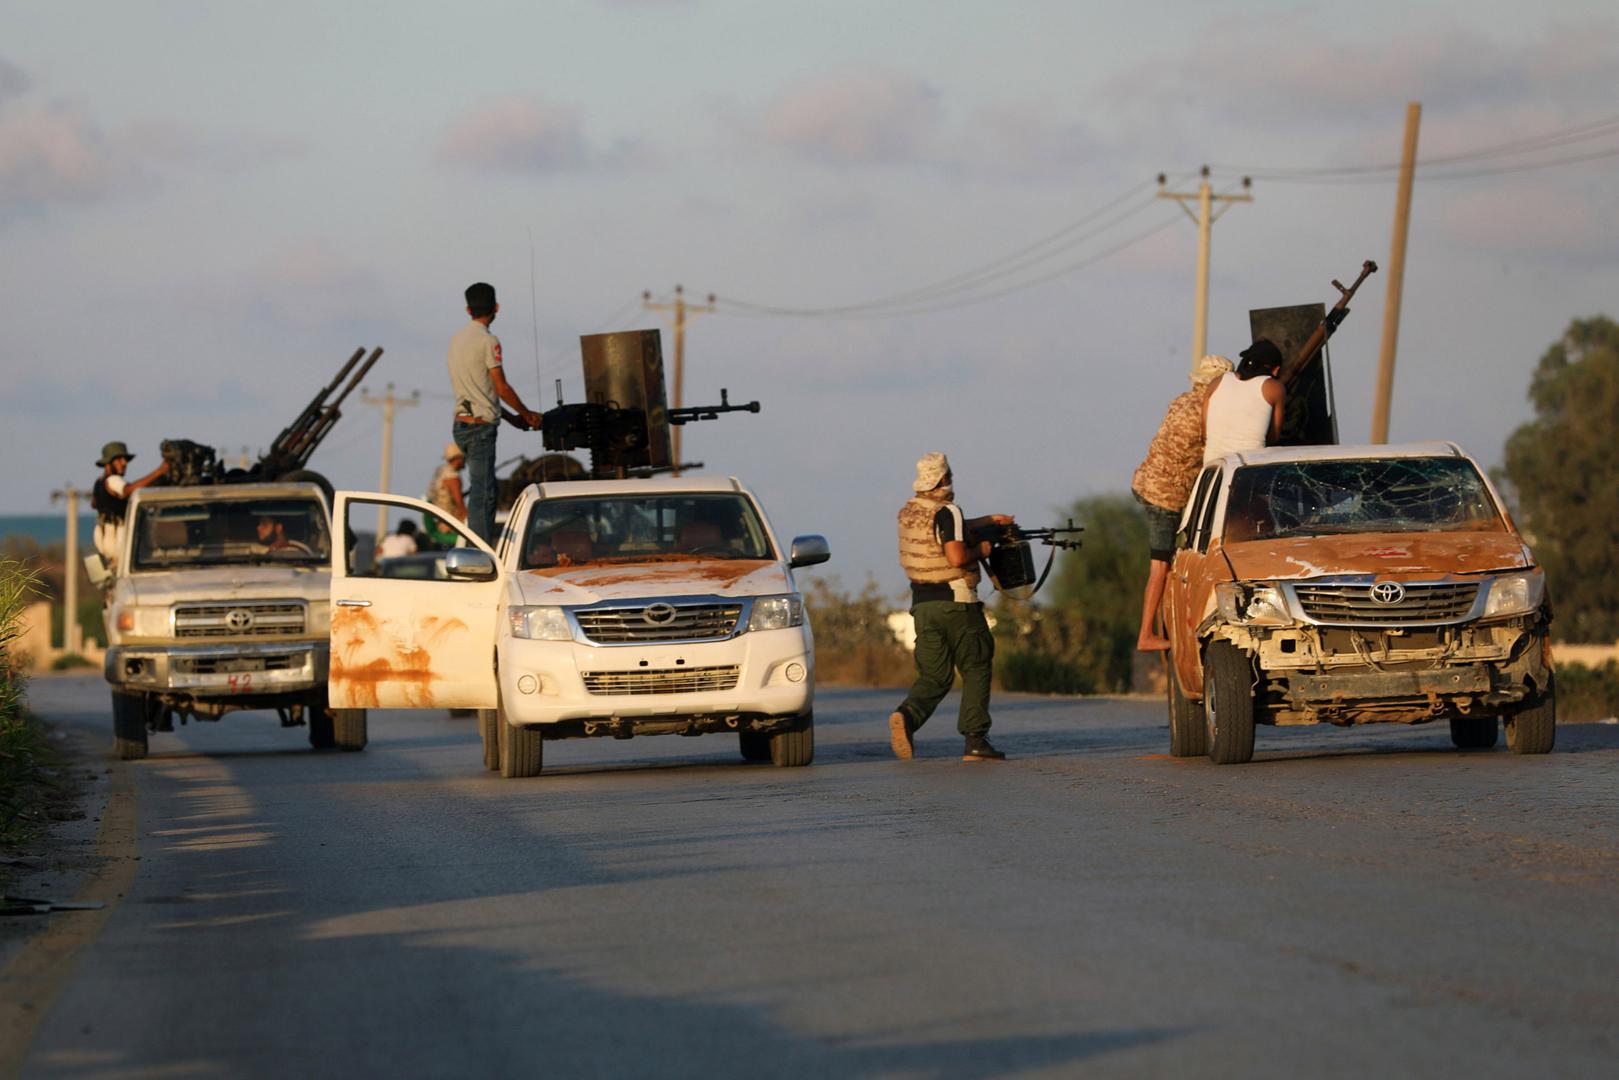 القوات المسلحة المتحالفة مع الحكومة المعترف بها دوليا تحارب جماعة مسلحة في طرابلس، ليبيا في 22 سبتمبر/أيلول 2018. ©2018 هاني عمارة/رويترز